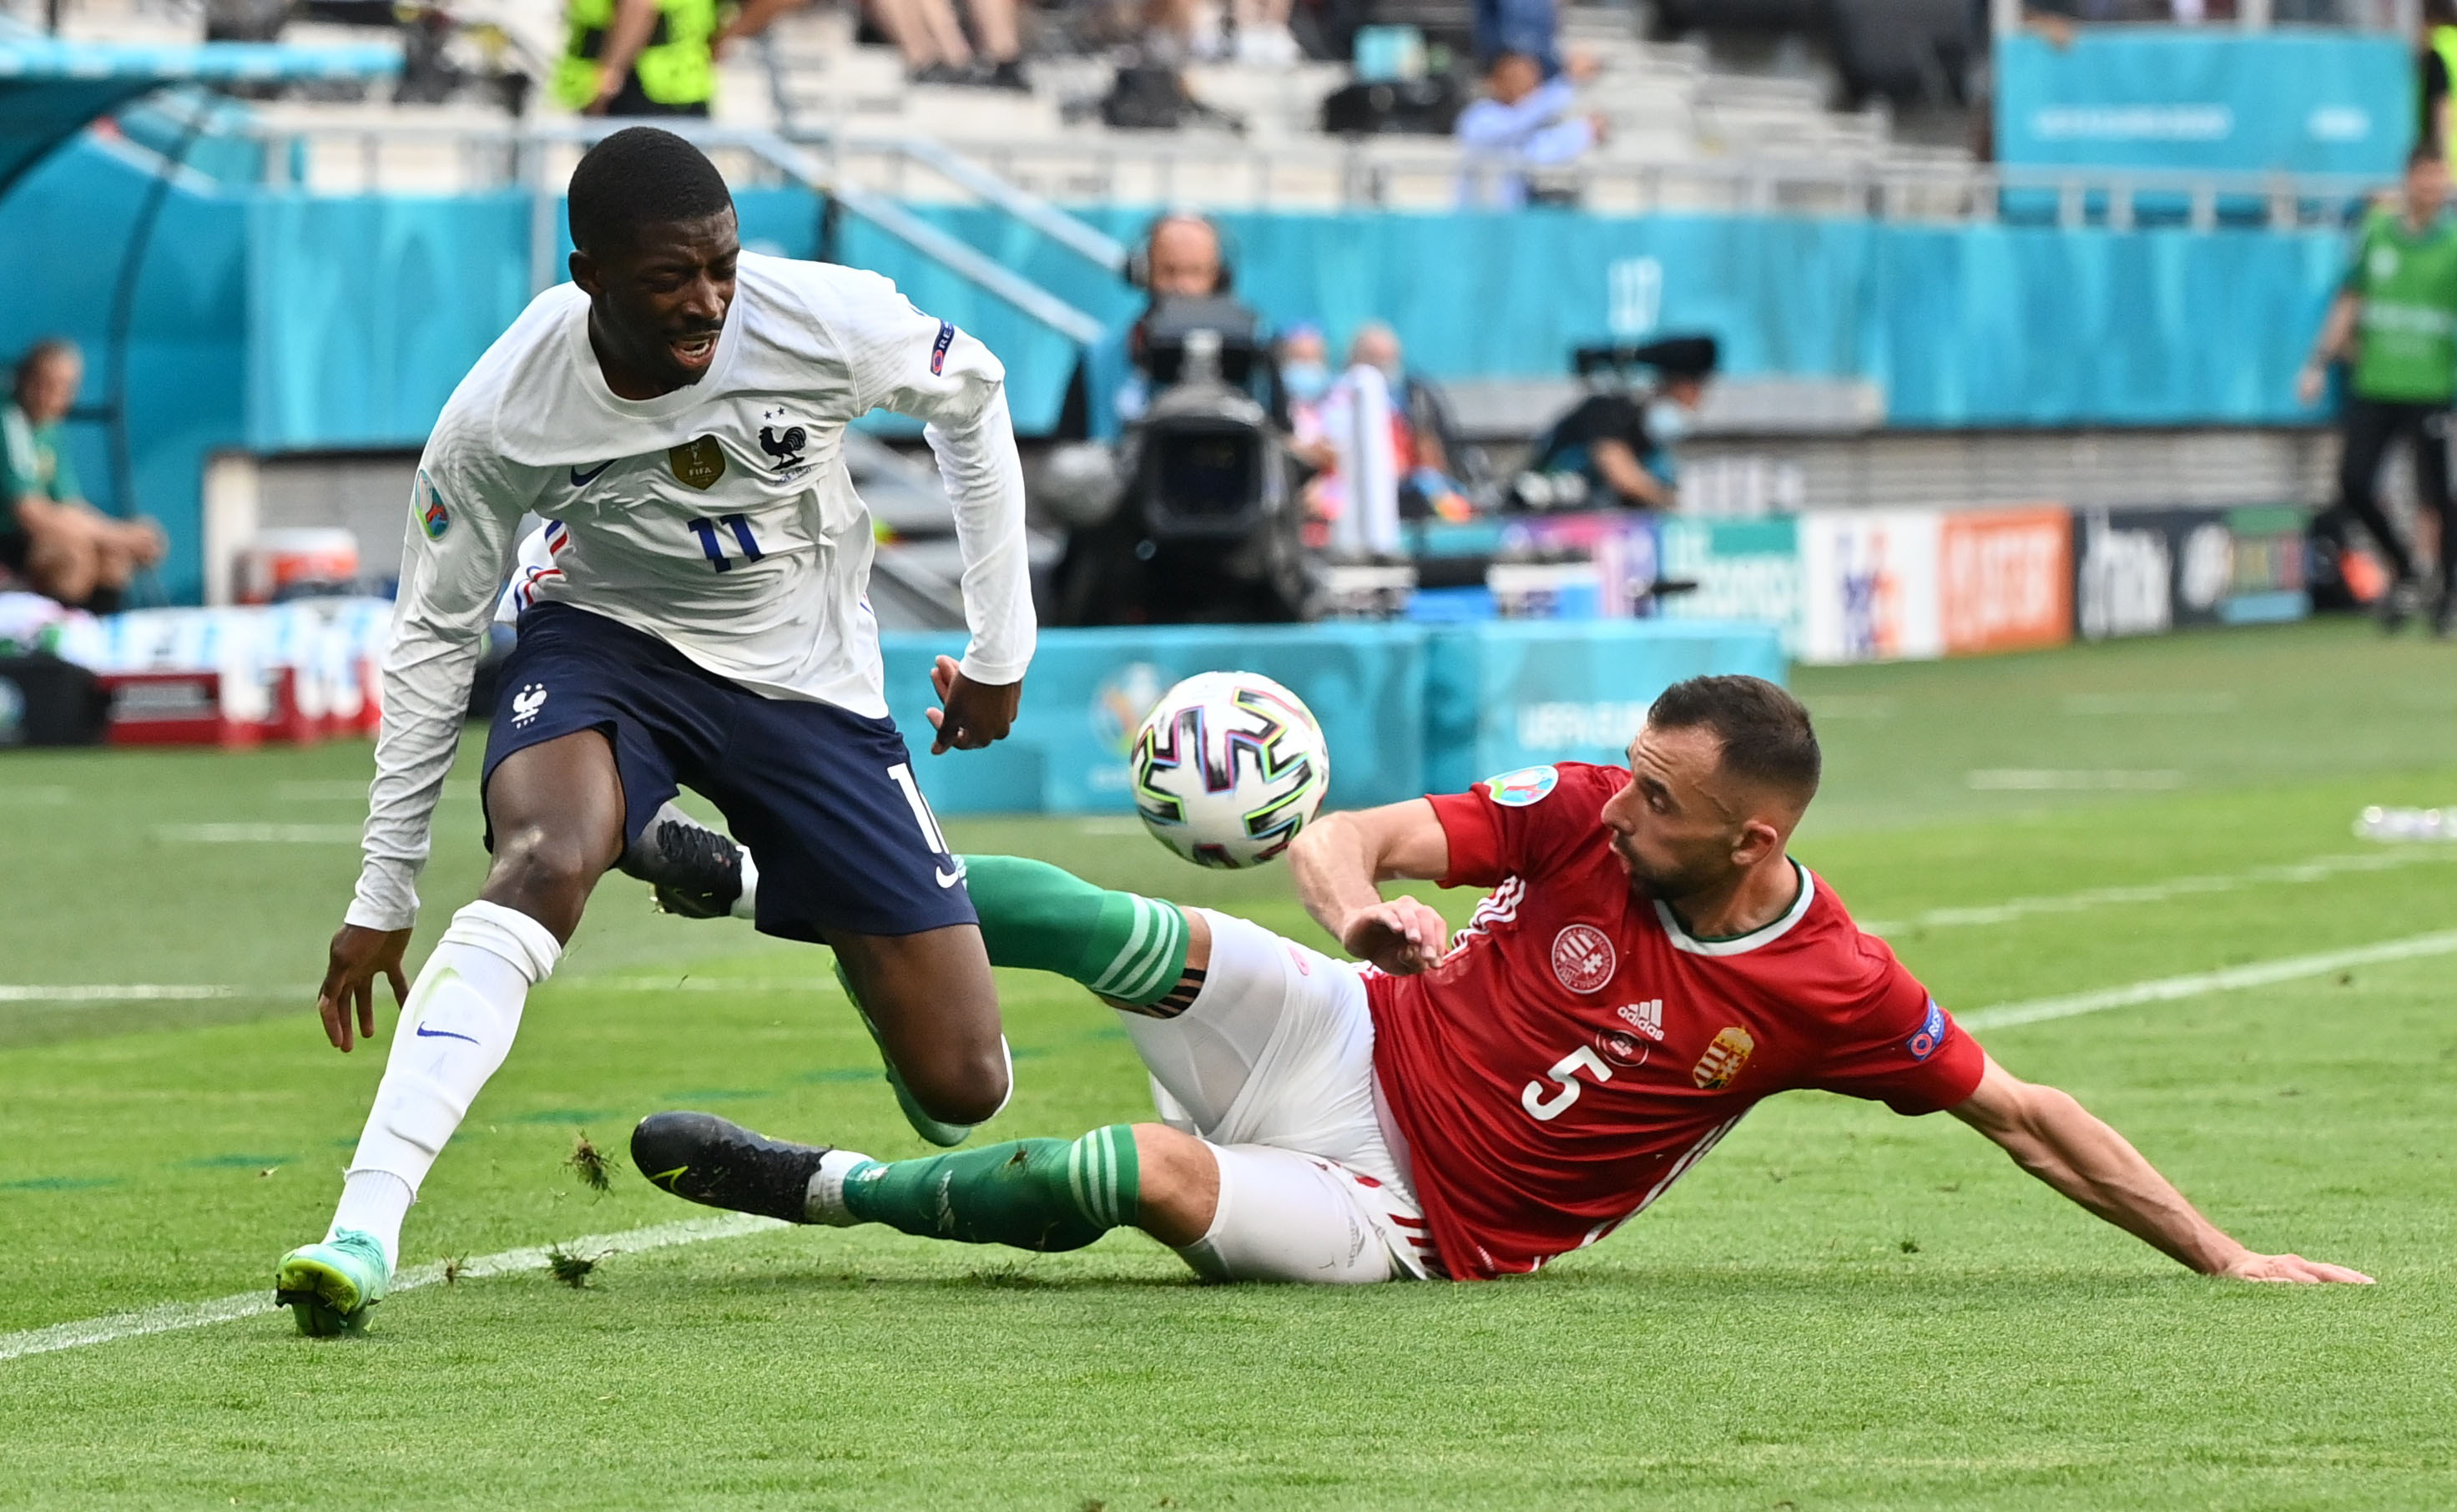 El momento en el que Ousmane Dembele sintió la lesión en su rodilla ante la marca del húngaro Attila Fiola. Foto: REUTERS/Tibor Illyes